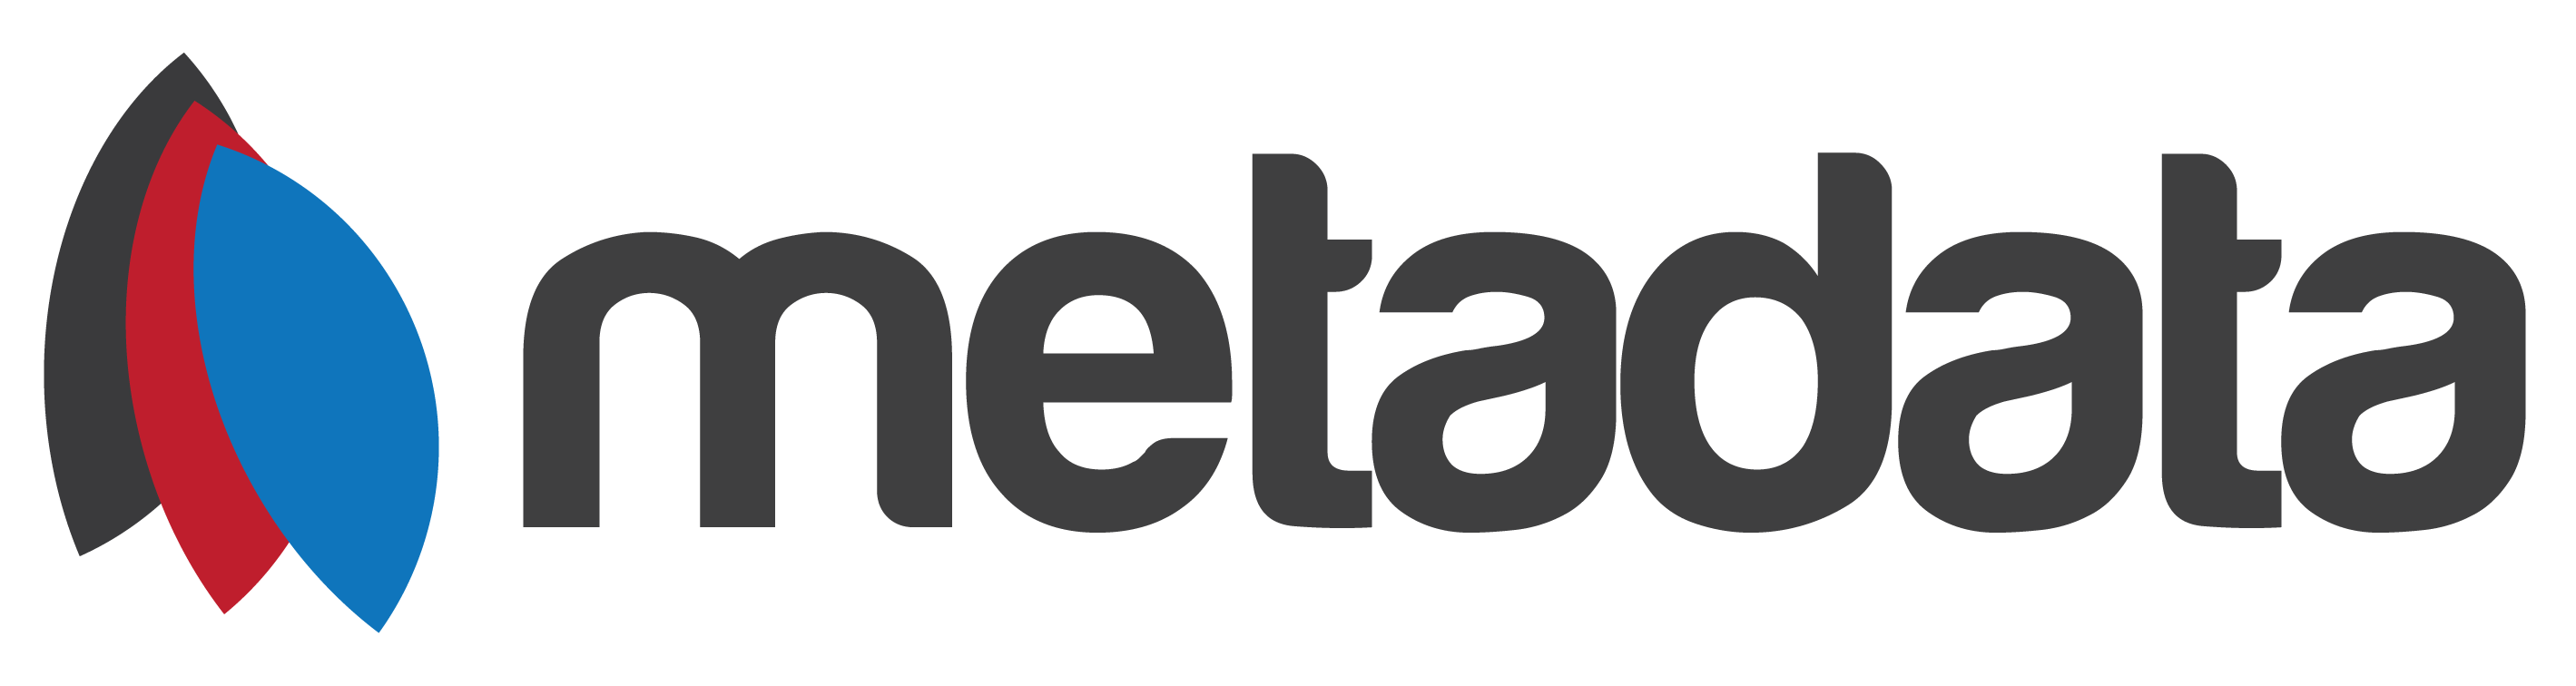 Metadata Logo with text